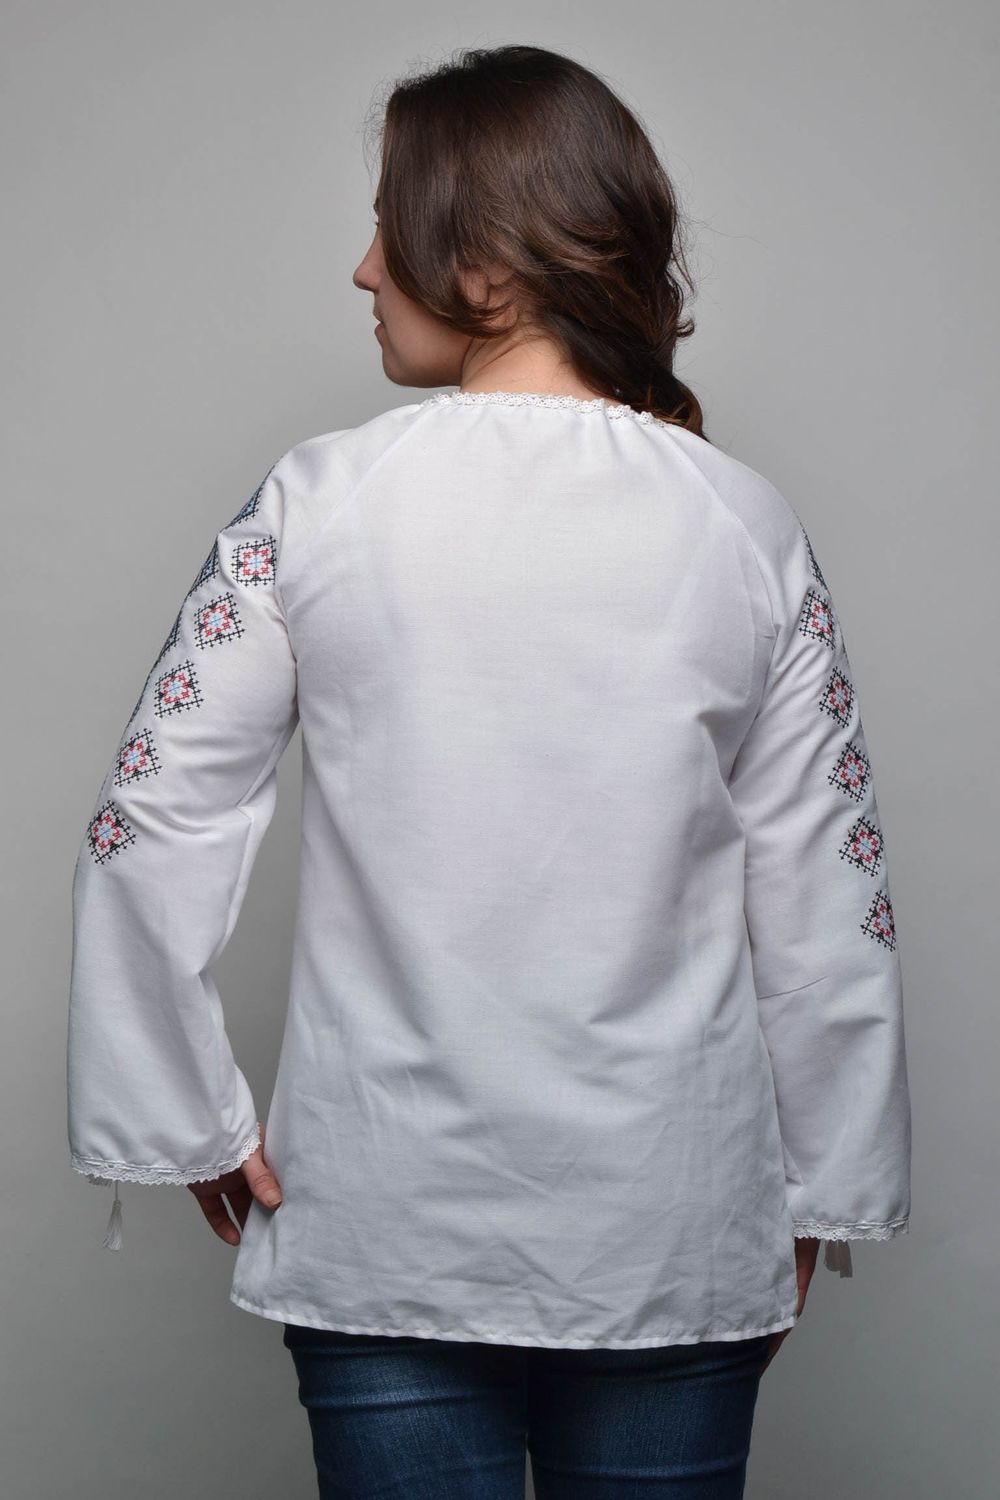 Women's cross stitched shirt photo 4